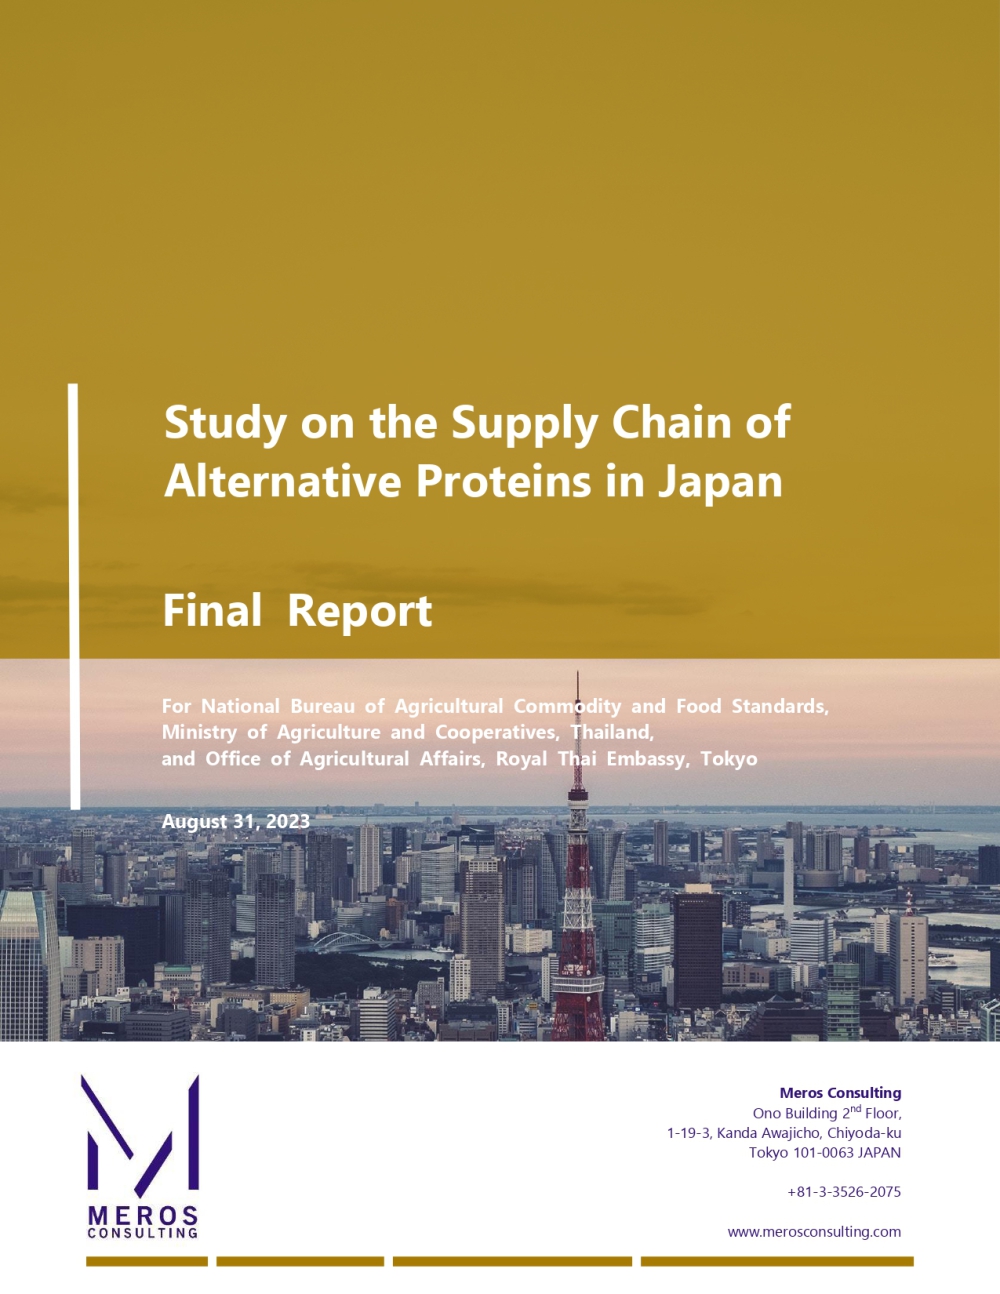 รายงานการศึกษาห่วงโซ่อุปทานโปรตีนทางเลือกในประเทศญี่ปุ่น